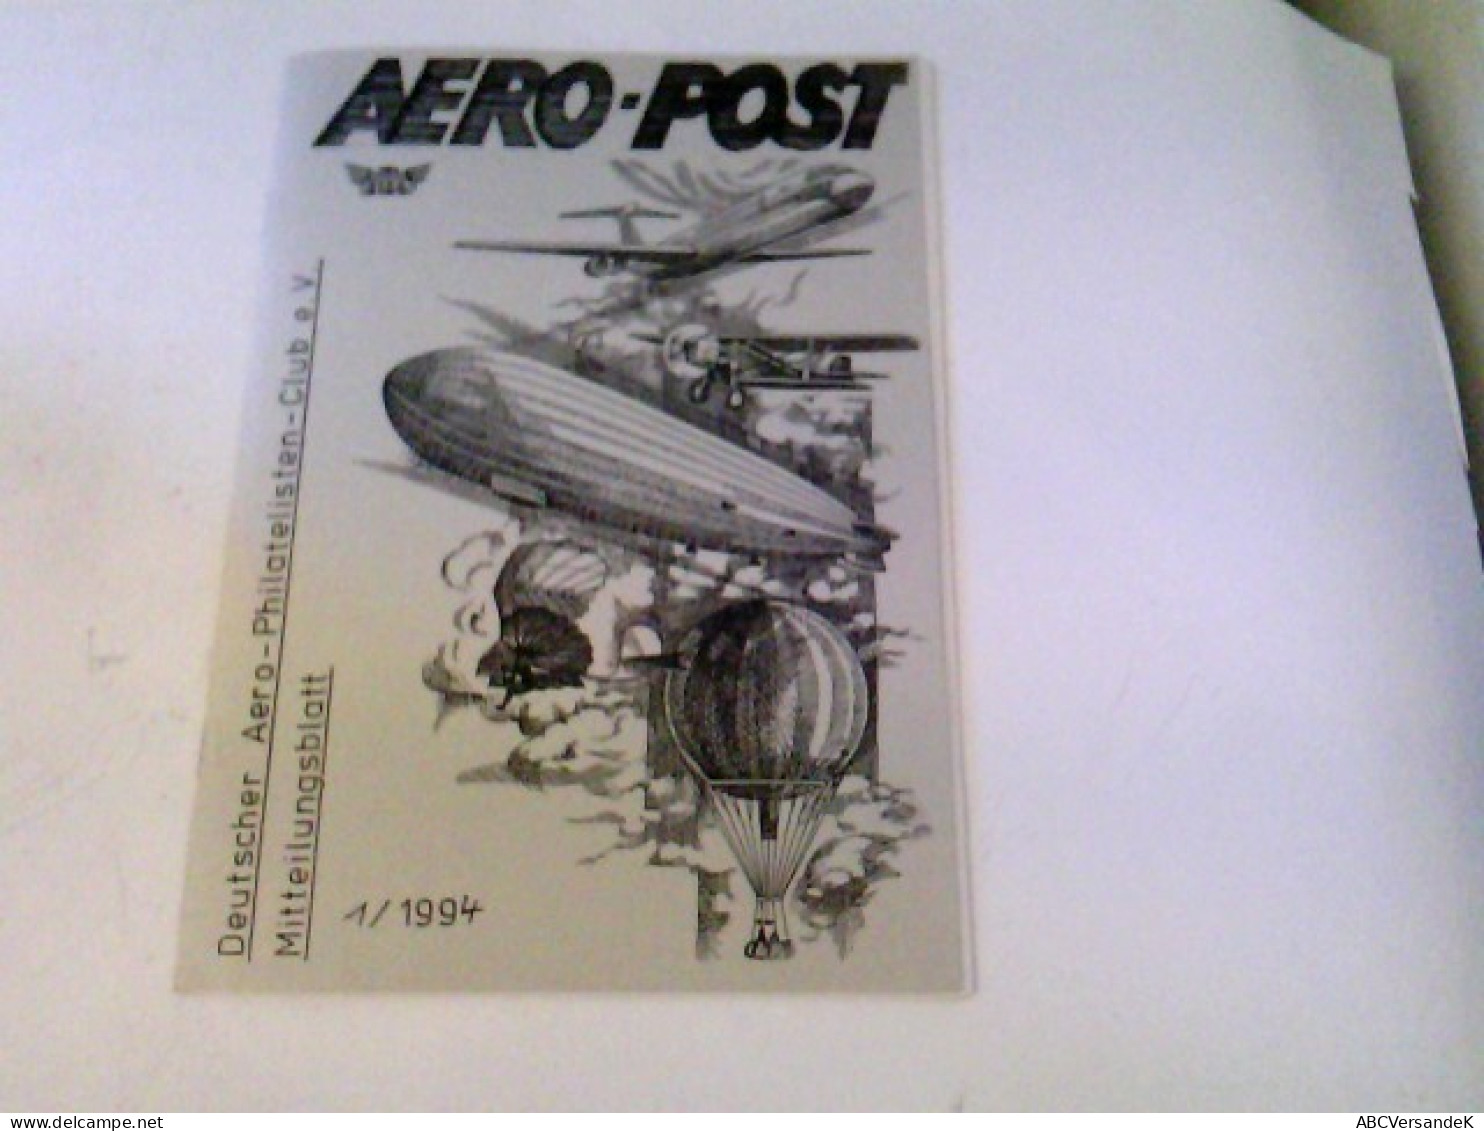 AERO-POST 1/1994 Mitteilungsblatt - Transporte